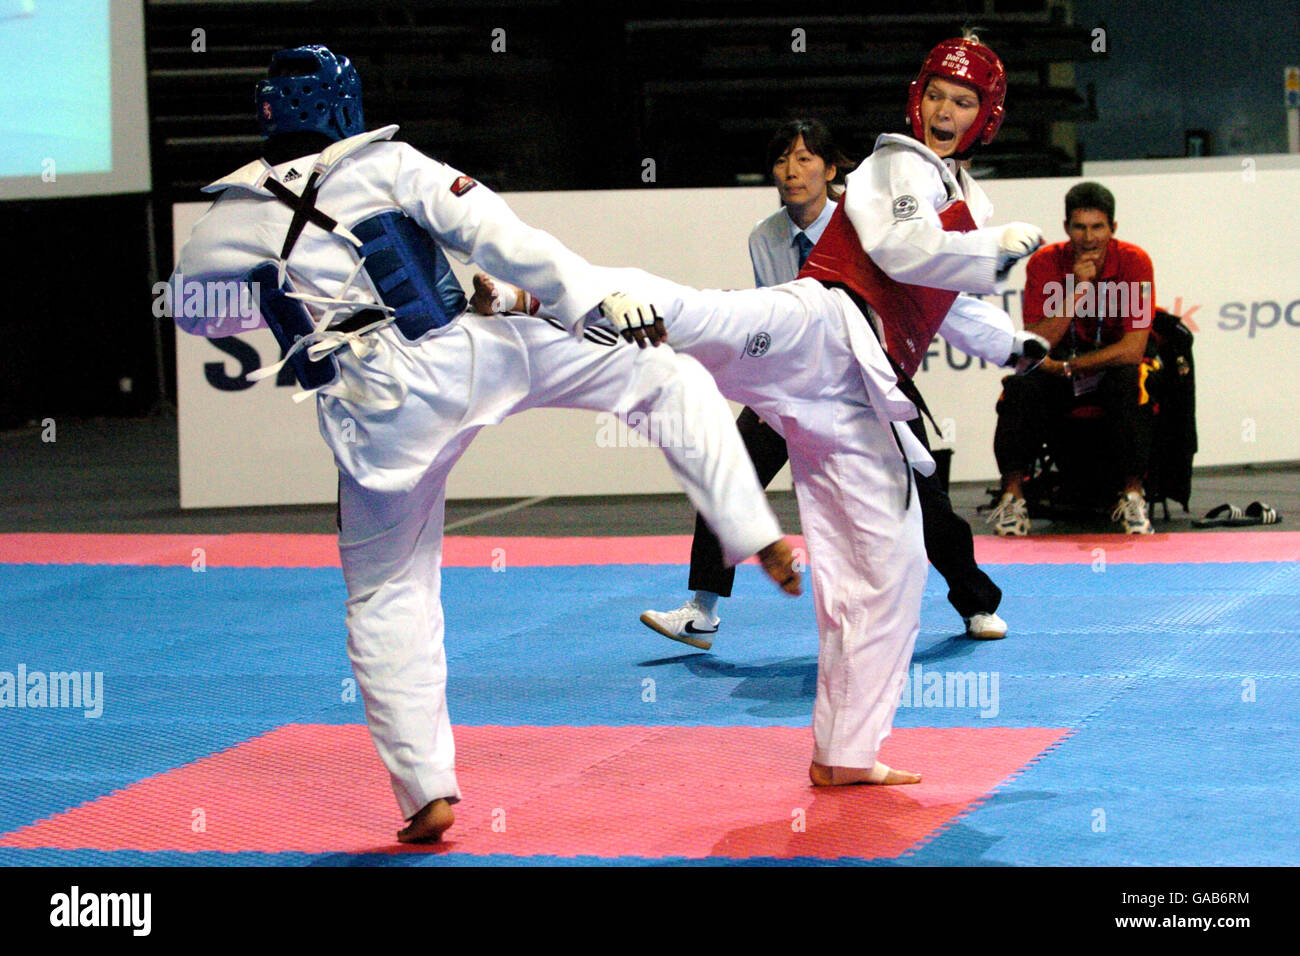 Athlétisme - 2007 qualification olympique mondiale de Taekwondo Bejing - MEN Arena.Helena Fromm en action contre Gwladys Epangue en France (l) Banque D'Images